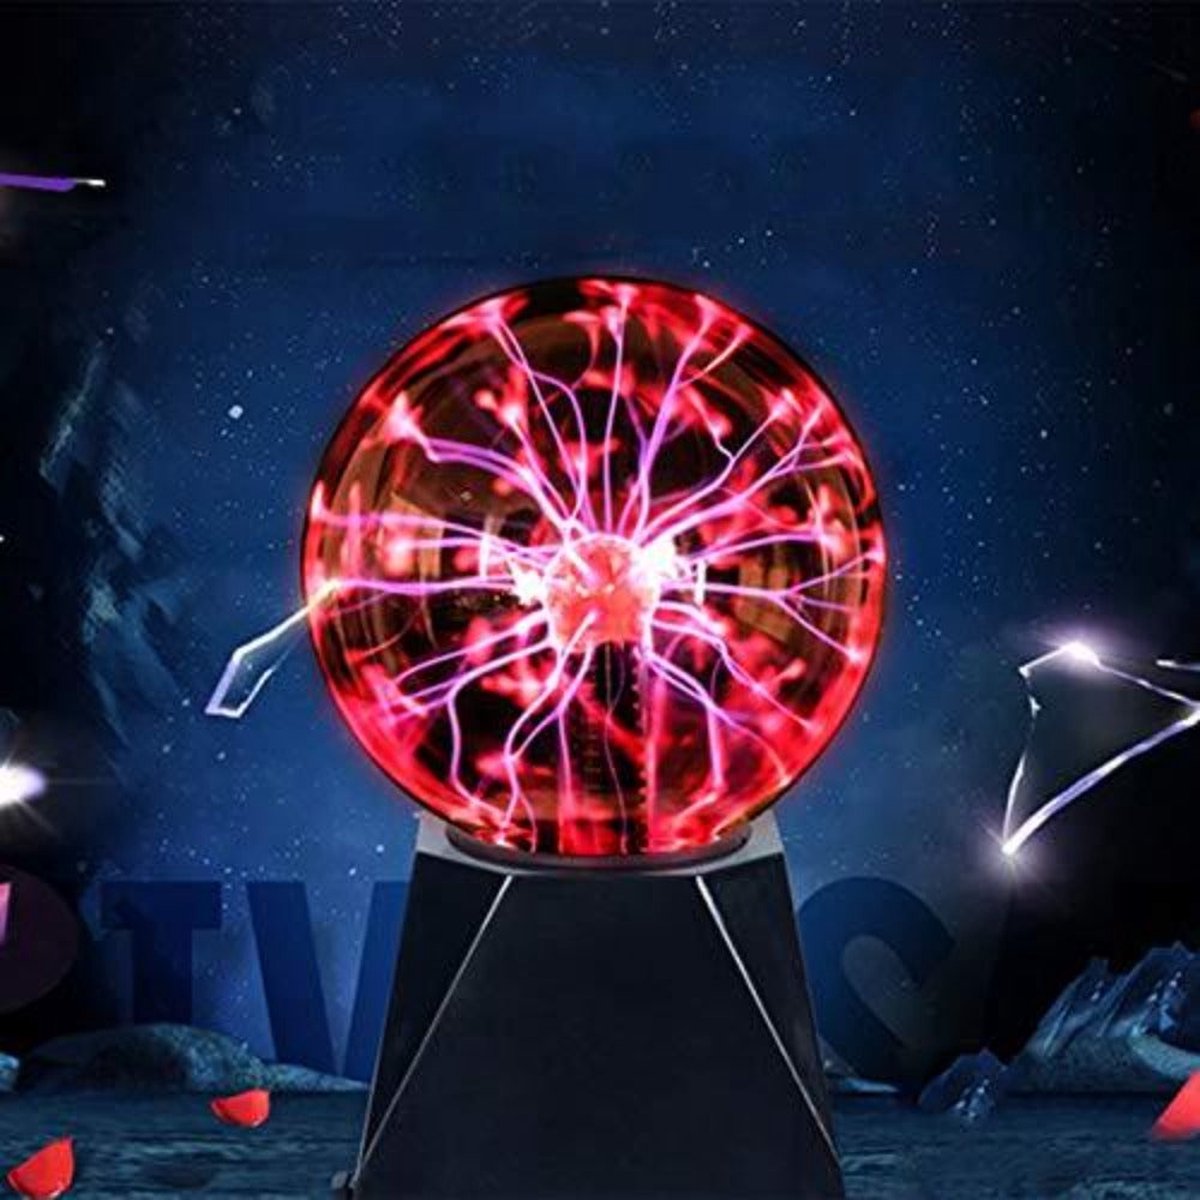 Lampe à boule plasma de 7,6 cm - Boule à plasma magique